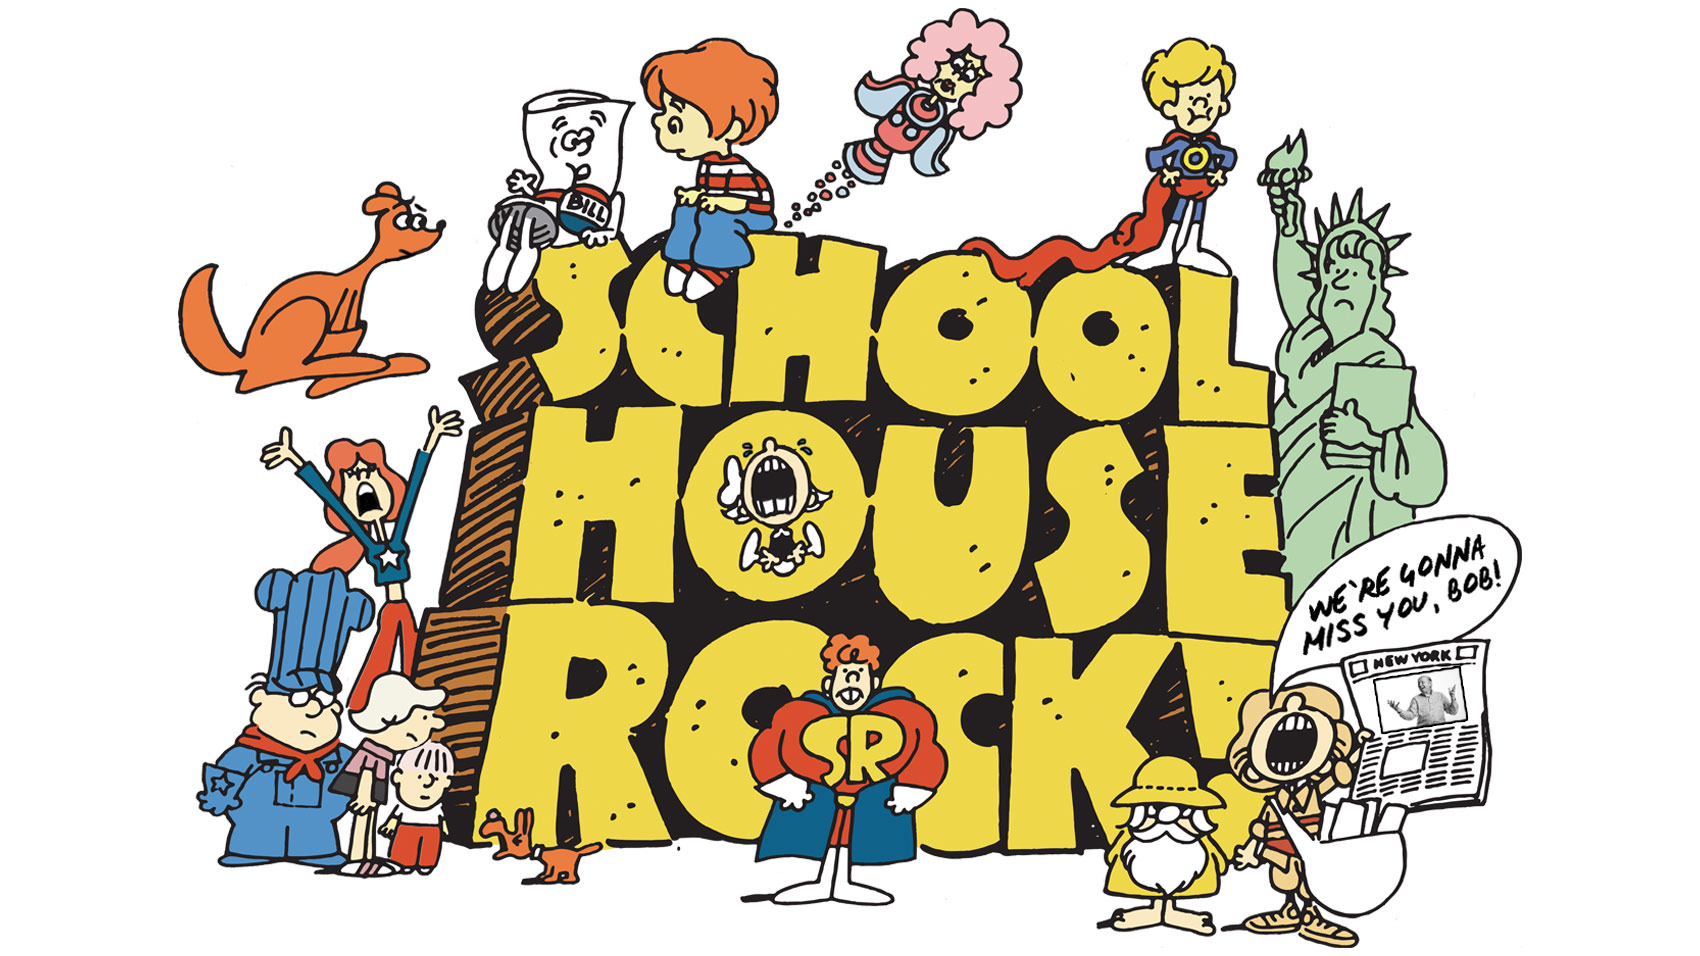 schoolhouse rock live